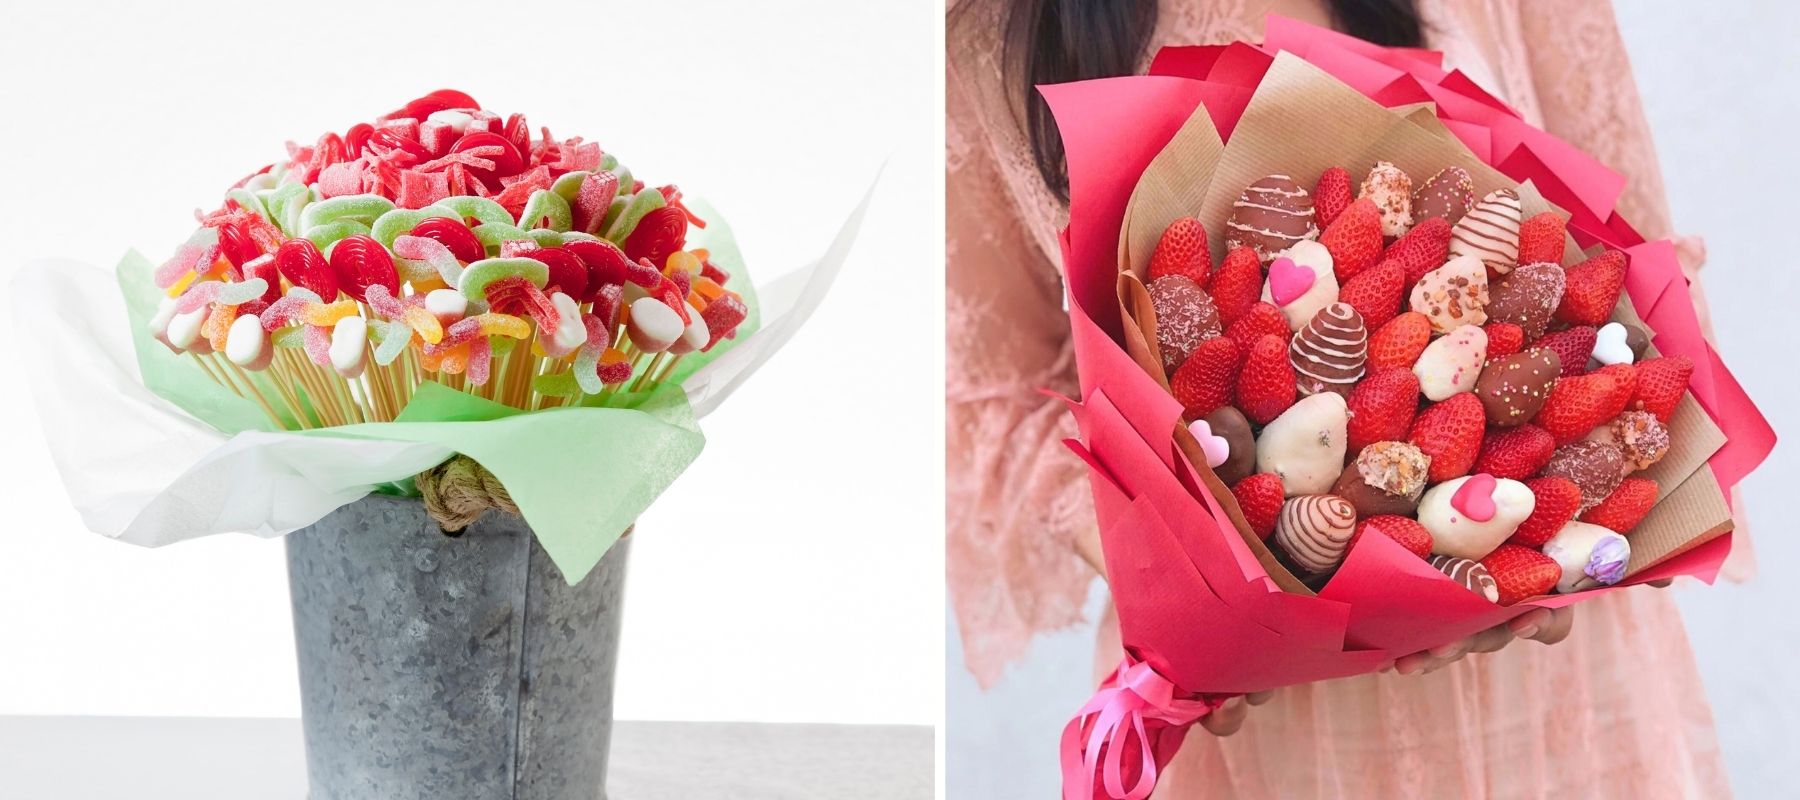 bouquets de fleurs bonbons - Recherche Google